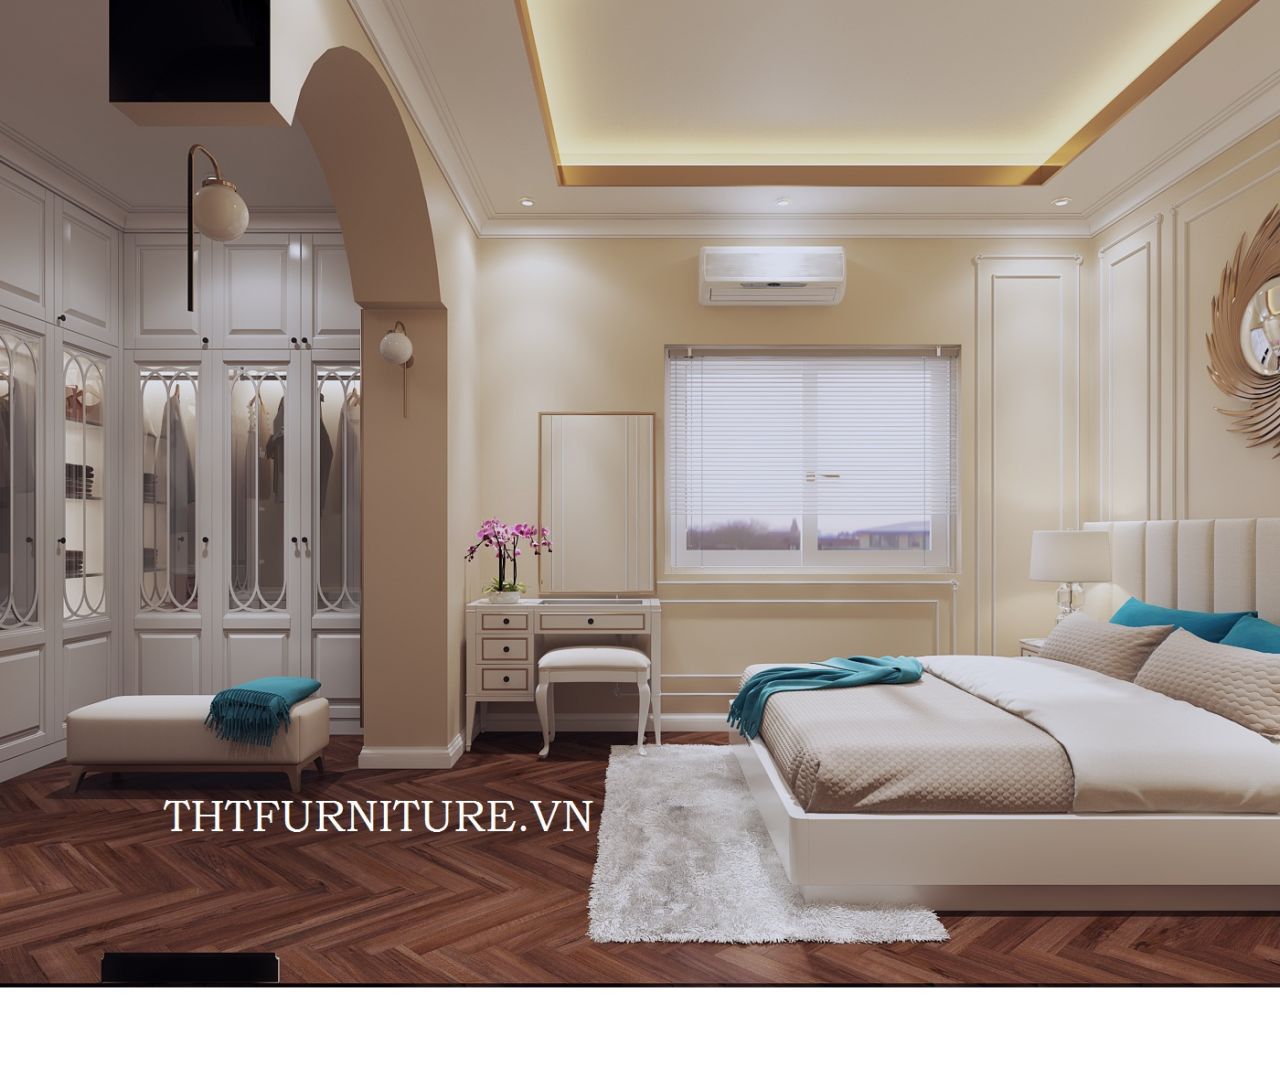 Thiết kế bộ phòng ngủ gỗ Sồi hiện đại sơn trắng